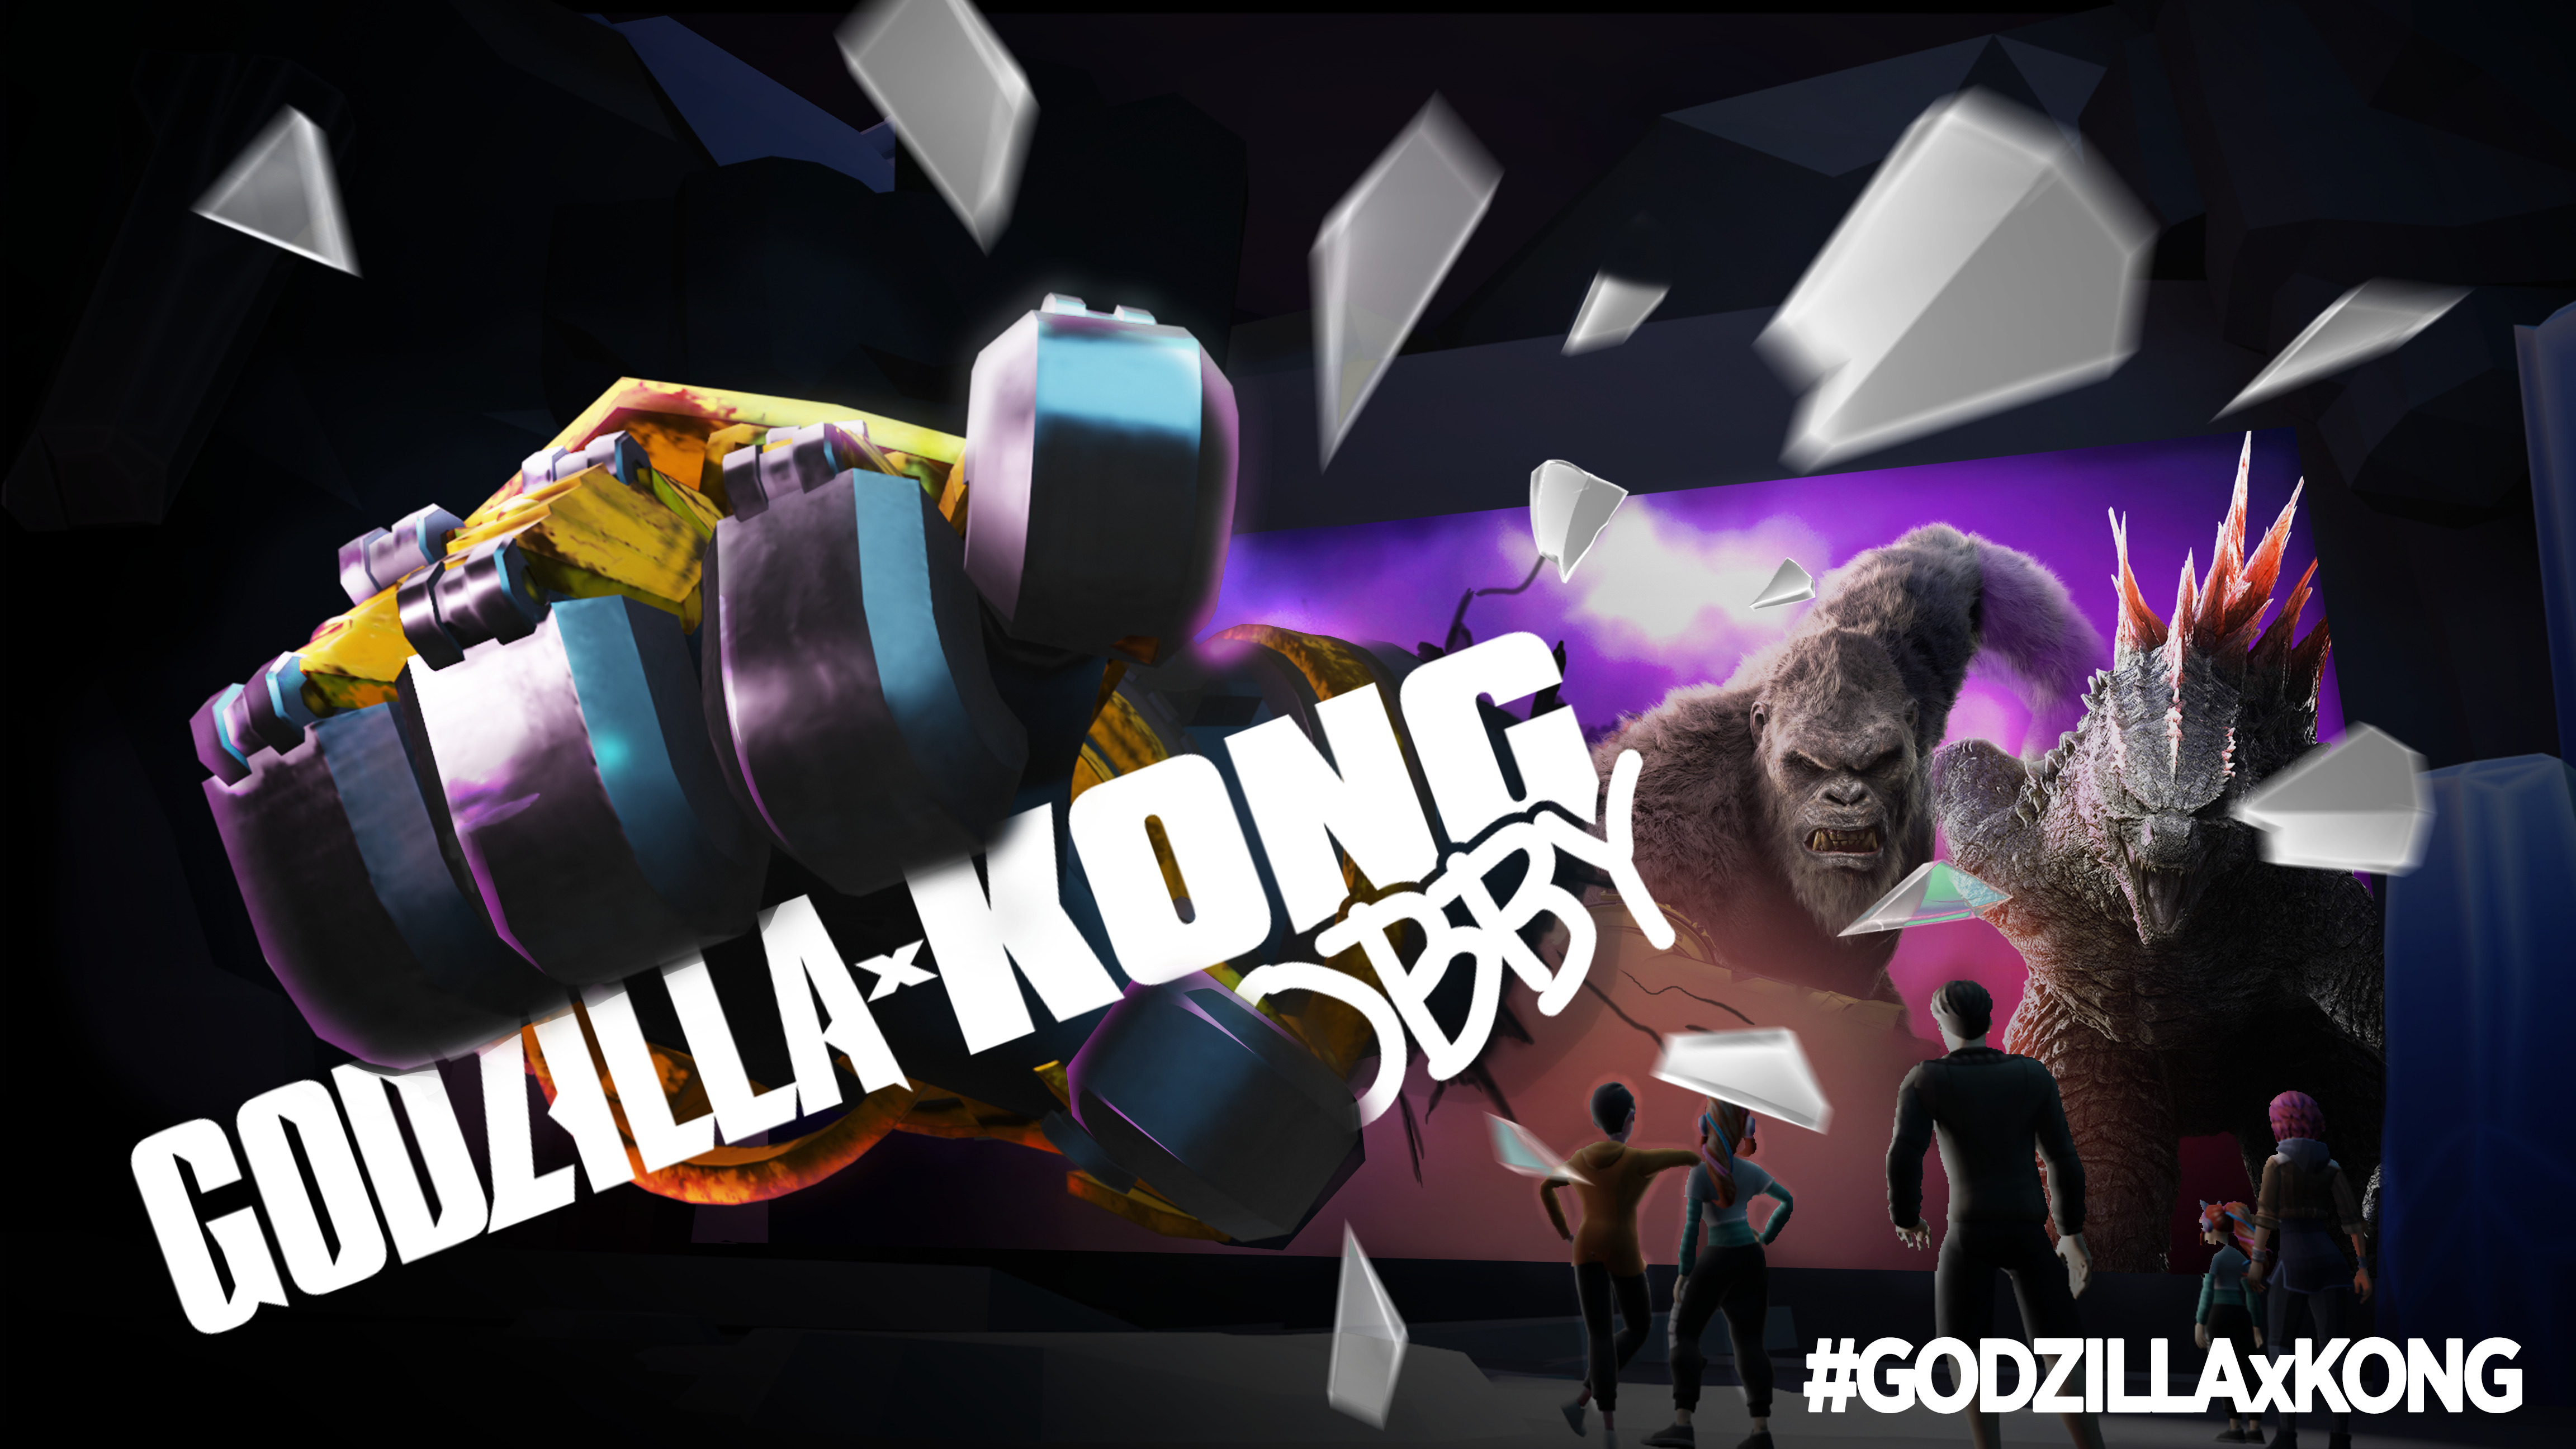 Godzilla x Kong Obby on Roblox: Revolutionizing Movie Promotion